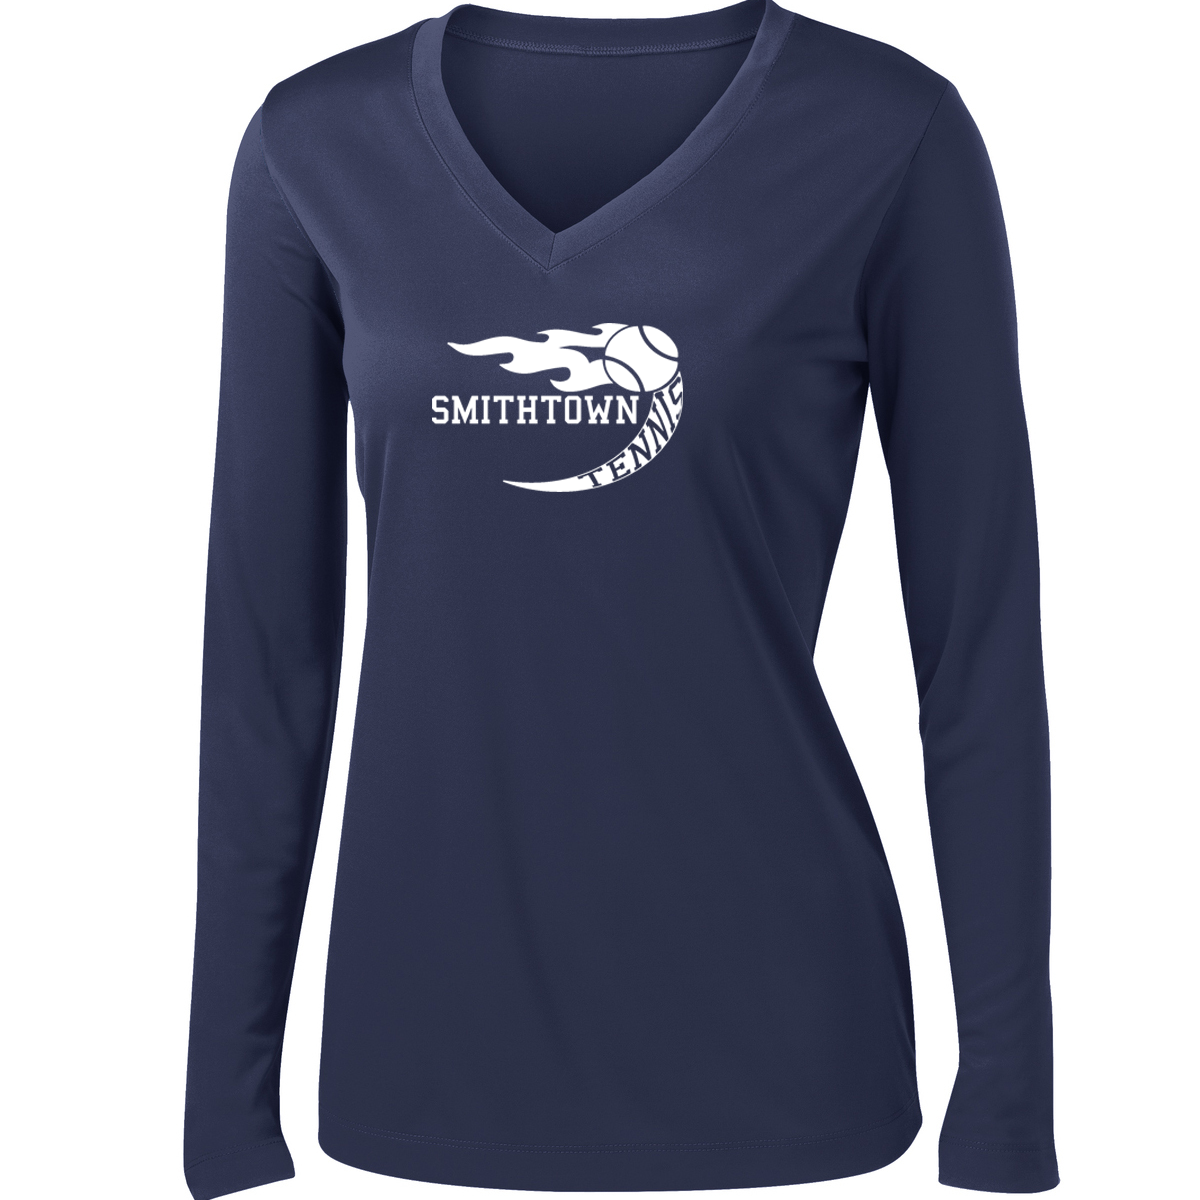 Smithtown Tennis Women's Long Sleeve Performance Shirt